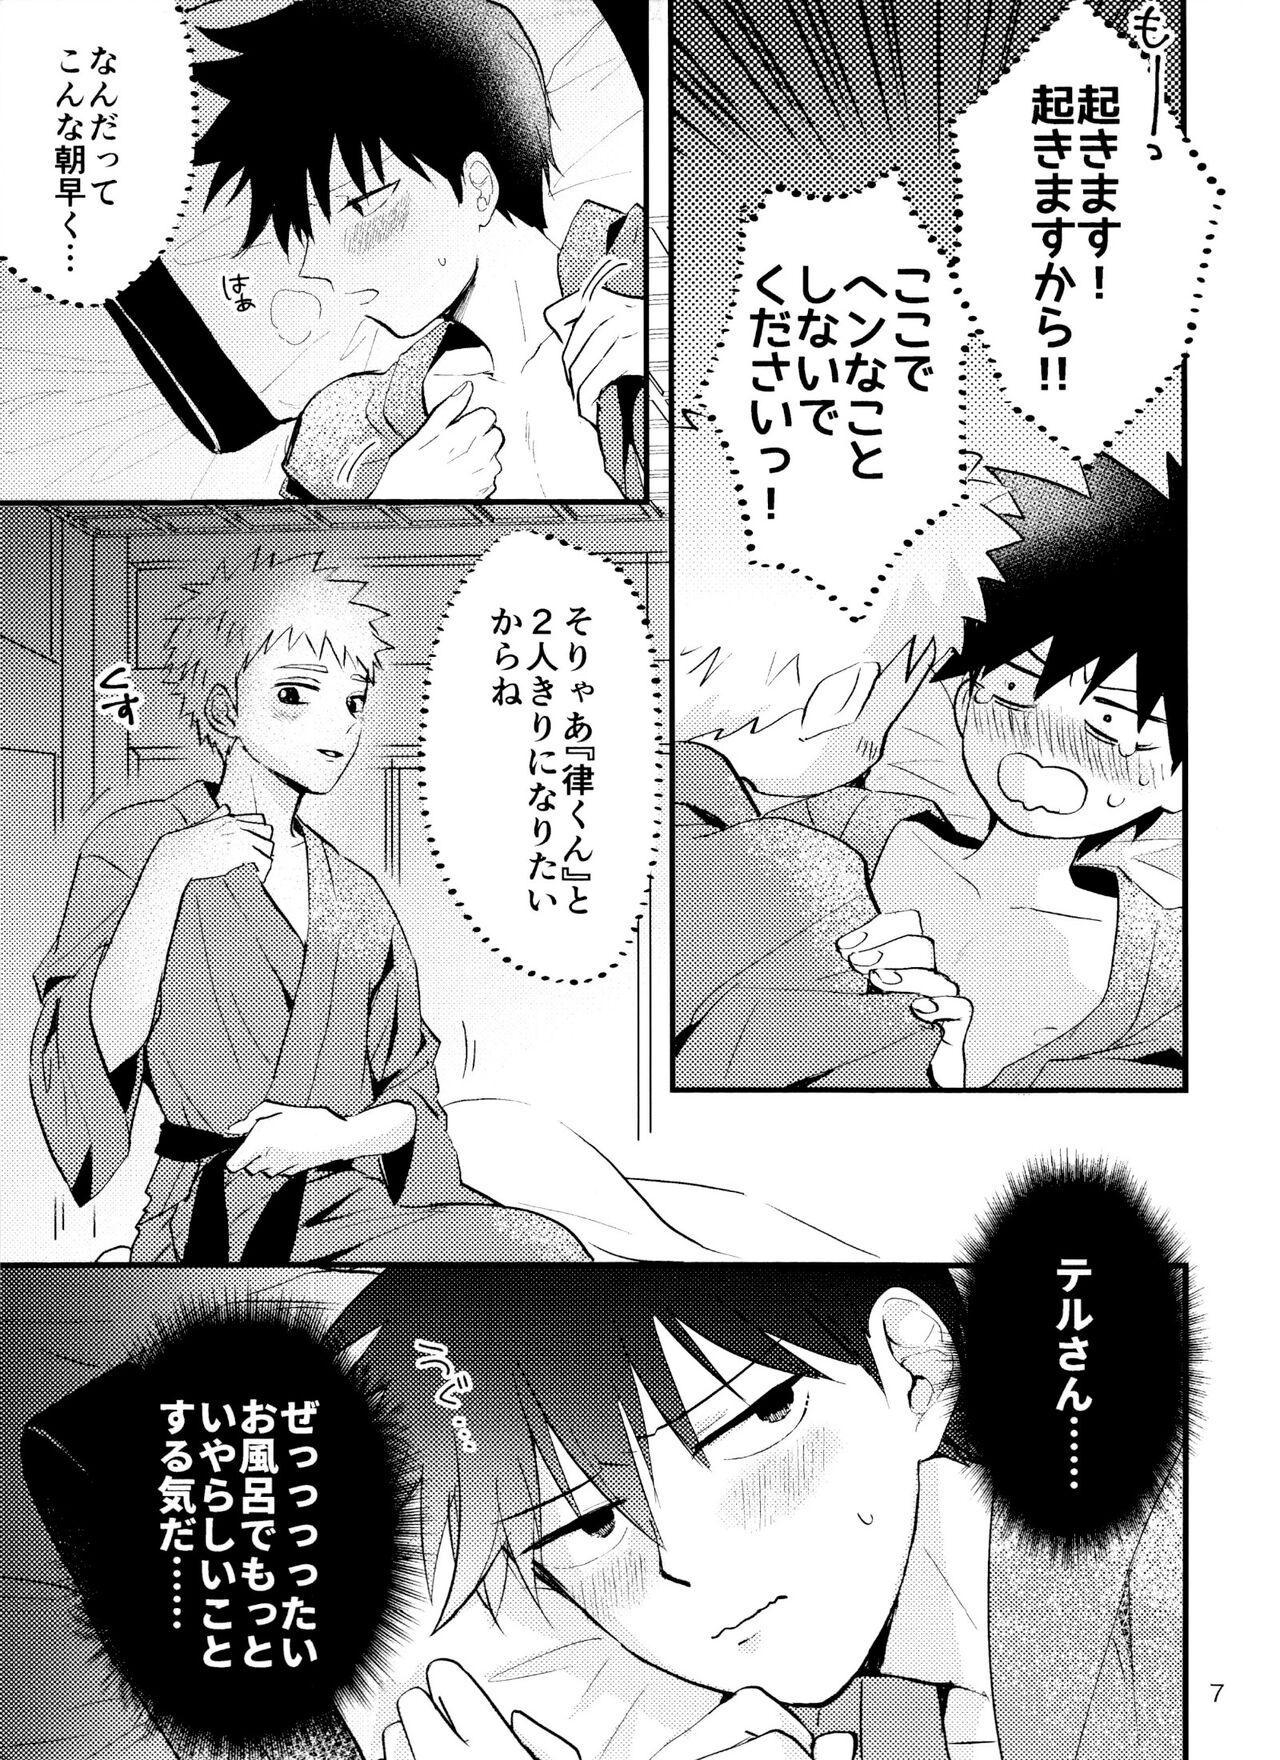 Massive Son'na tsumori janain desu! - Mob psycho 100 Gay Group - Page 6